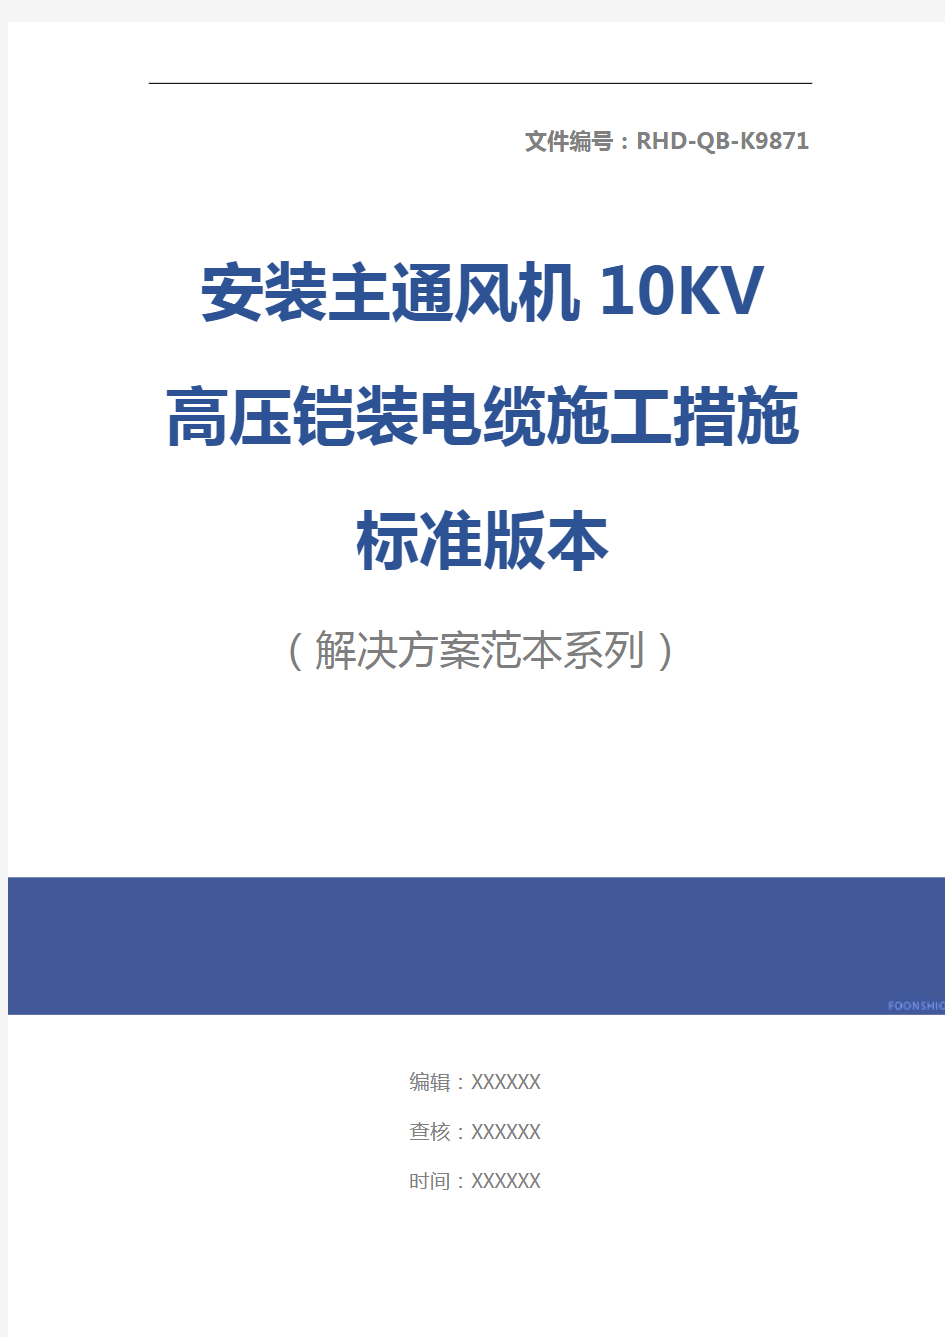 安装主通风机10KV高压铠装电缆施工措施标准版本